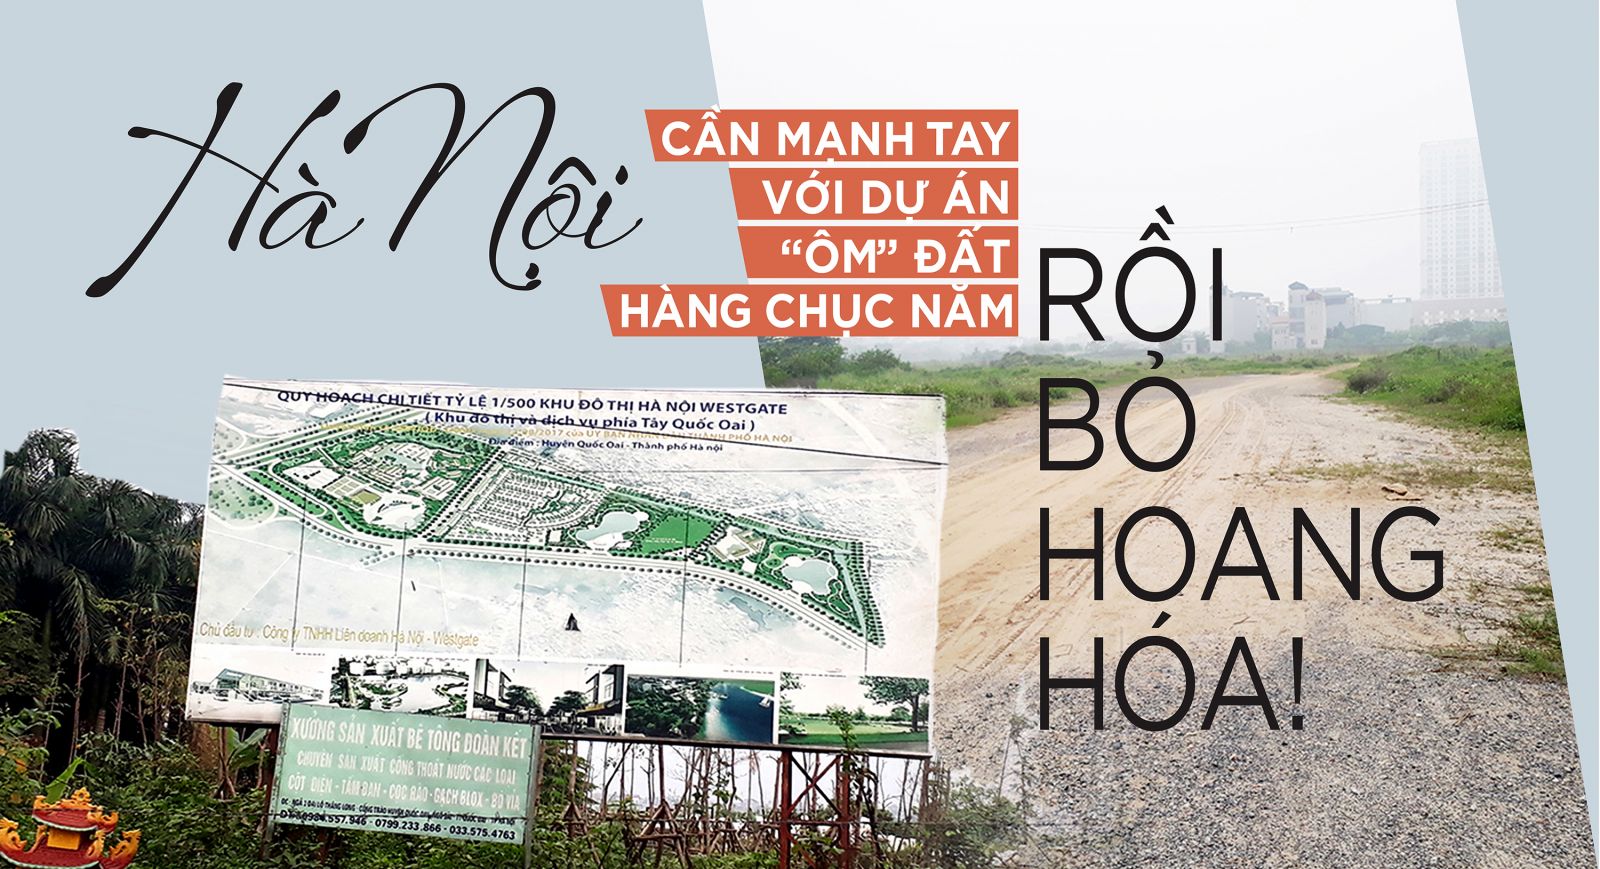 Hà Nội cần mạnh tay với dự án “ôm” đất hàng chục năm rồi bỏ hoang hóa